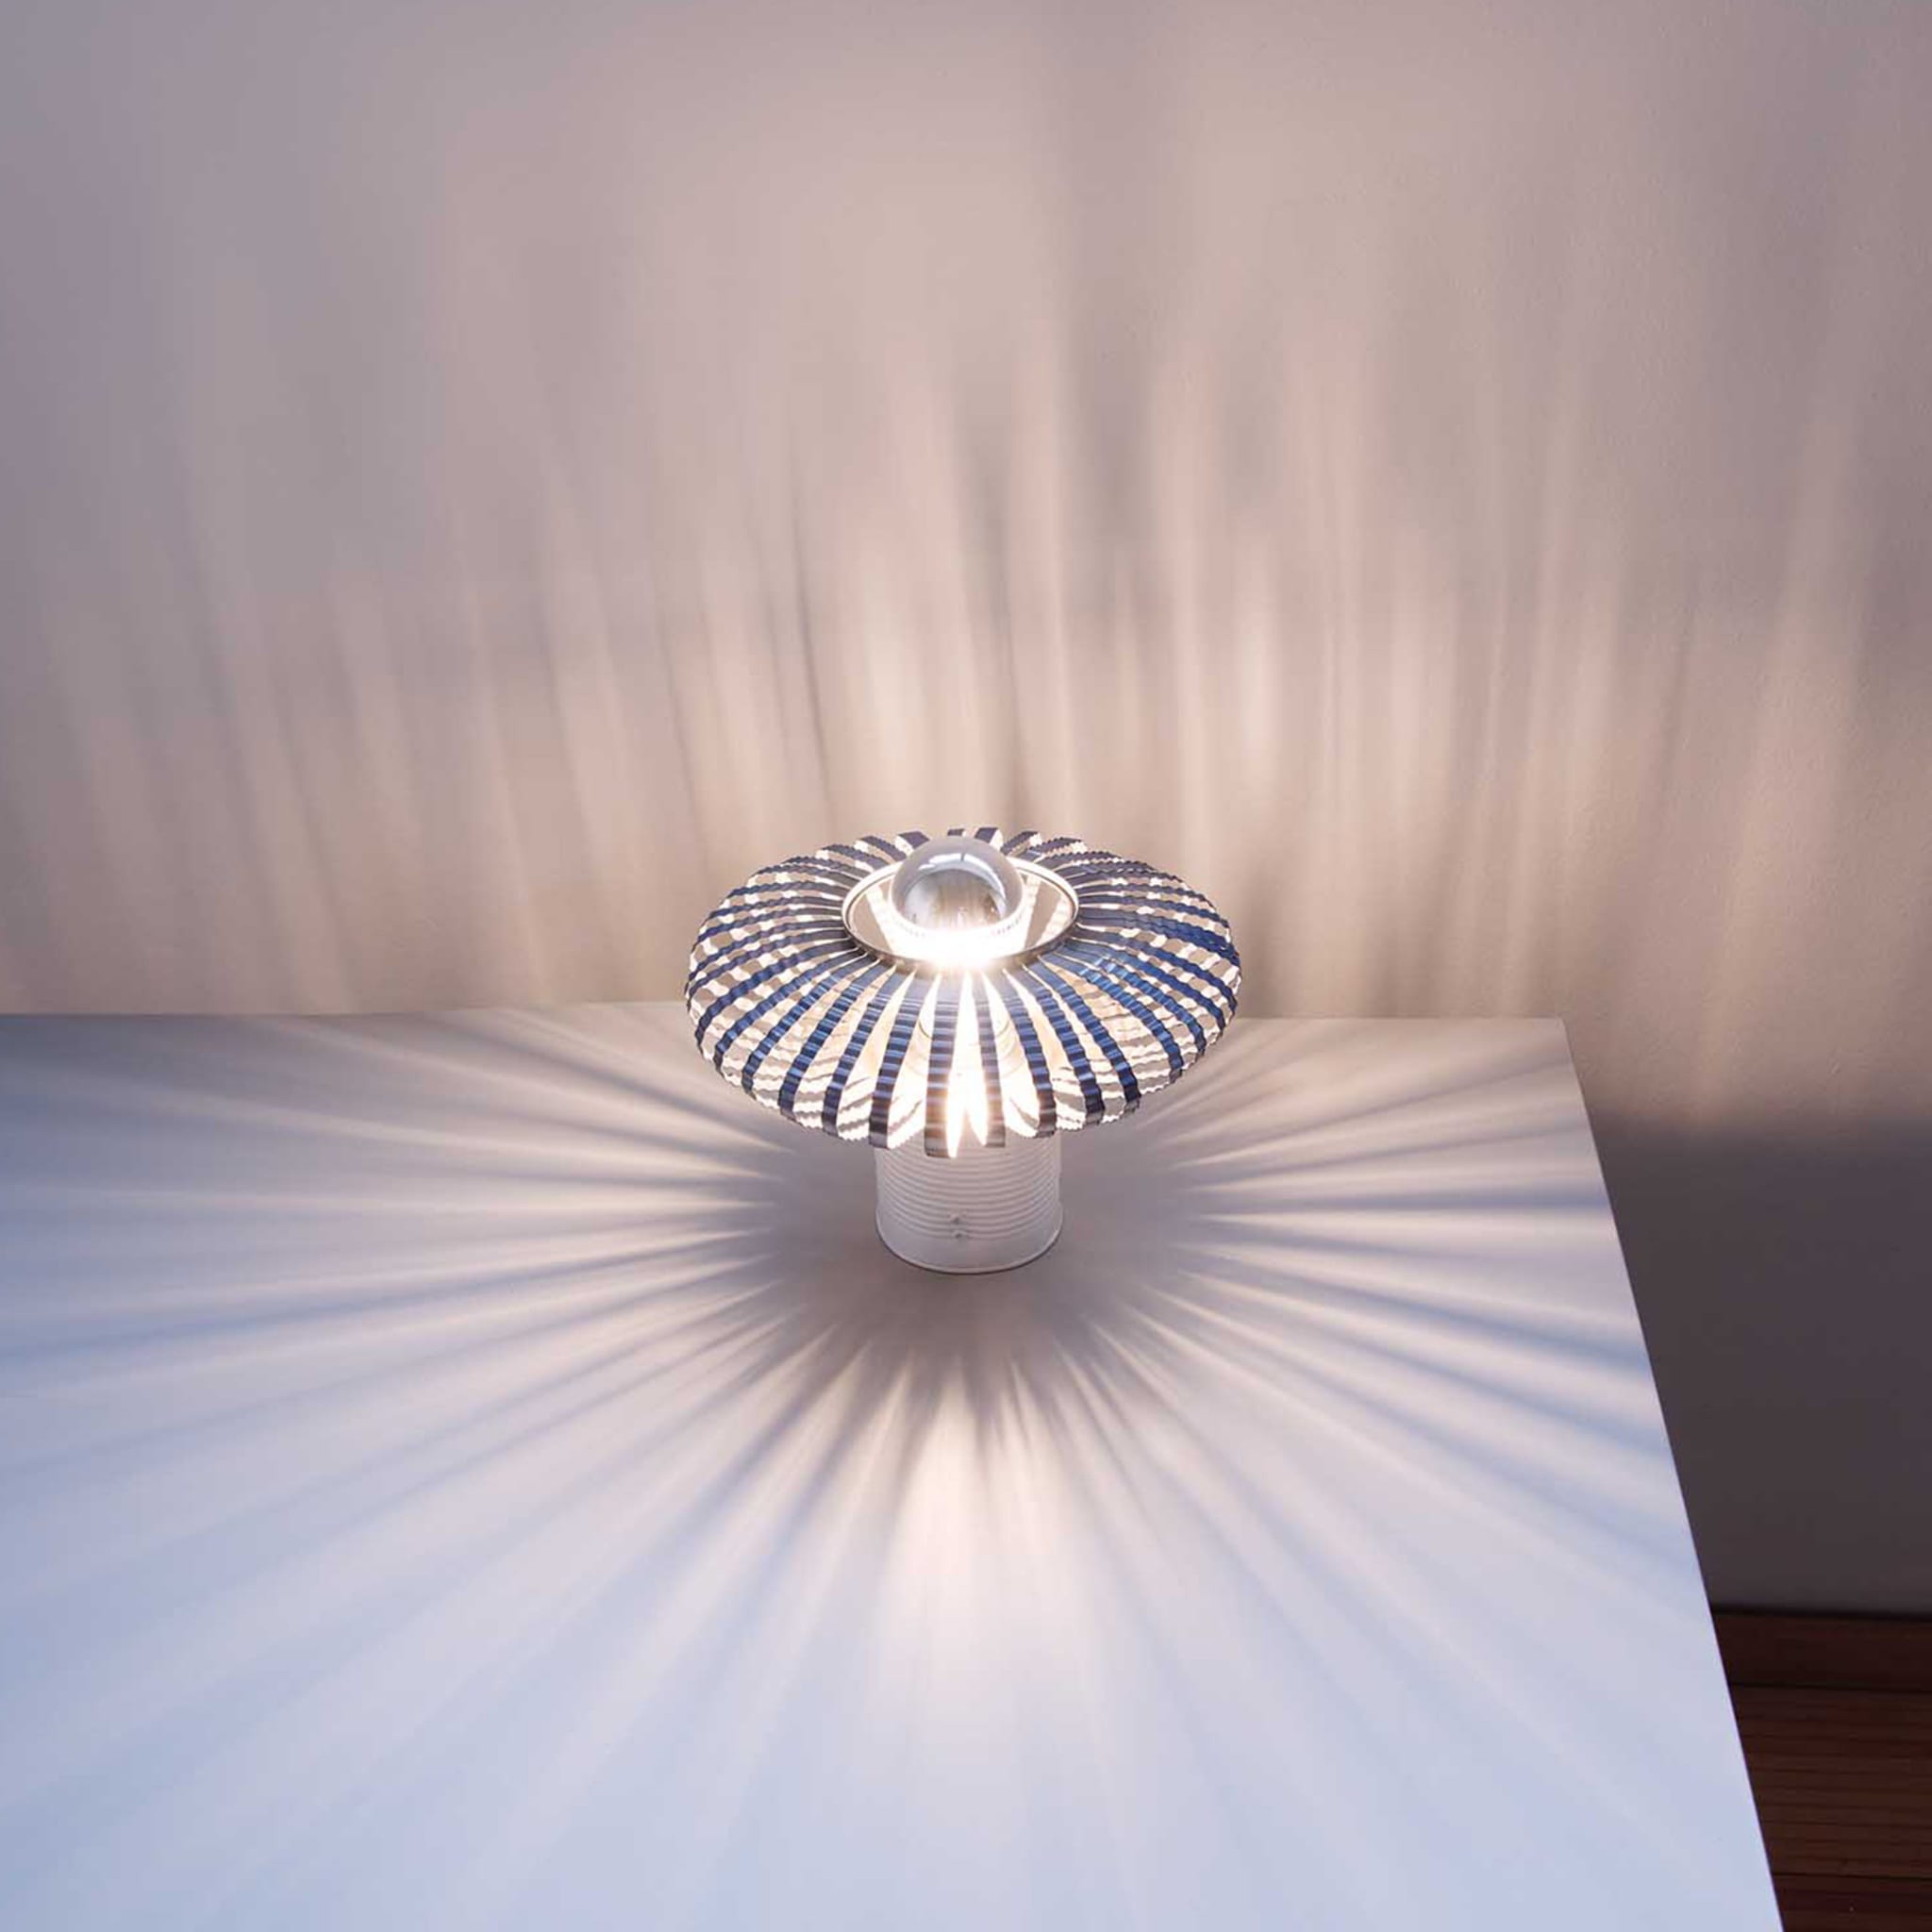 Celeste Table Lamp by Nadja Galli Zugaro - Alternative view 2